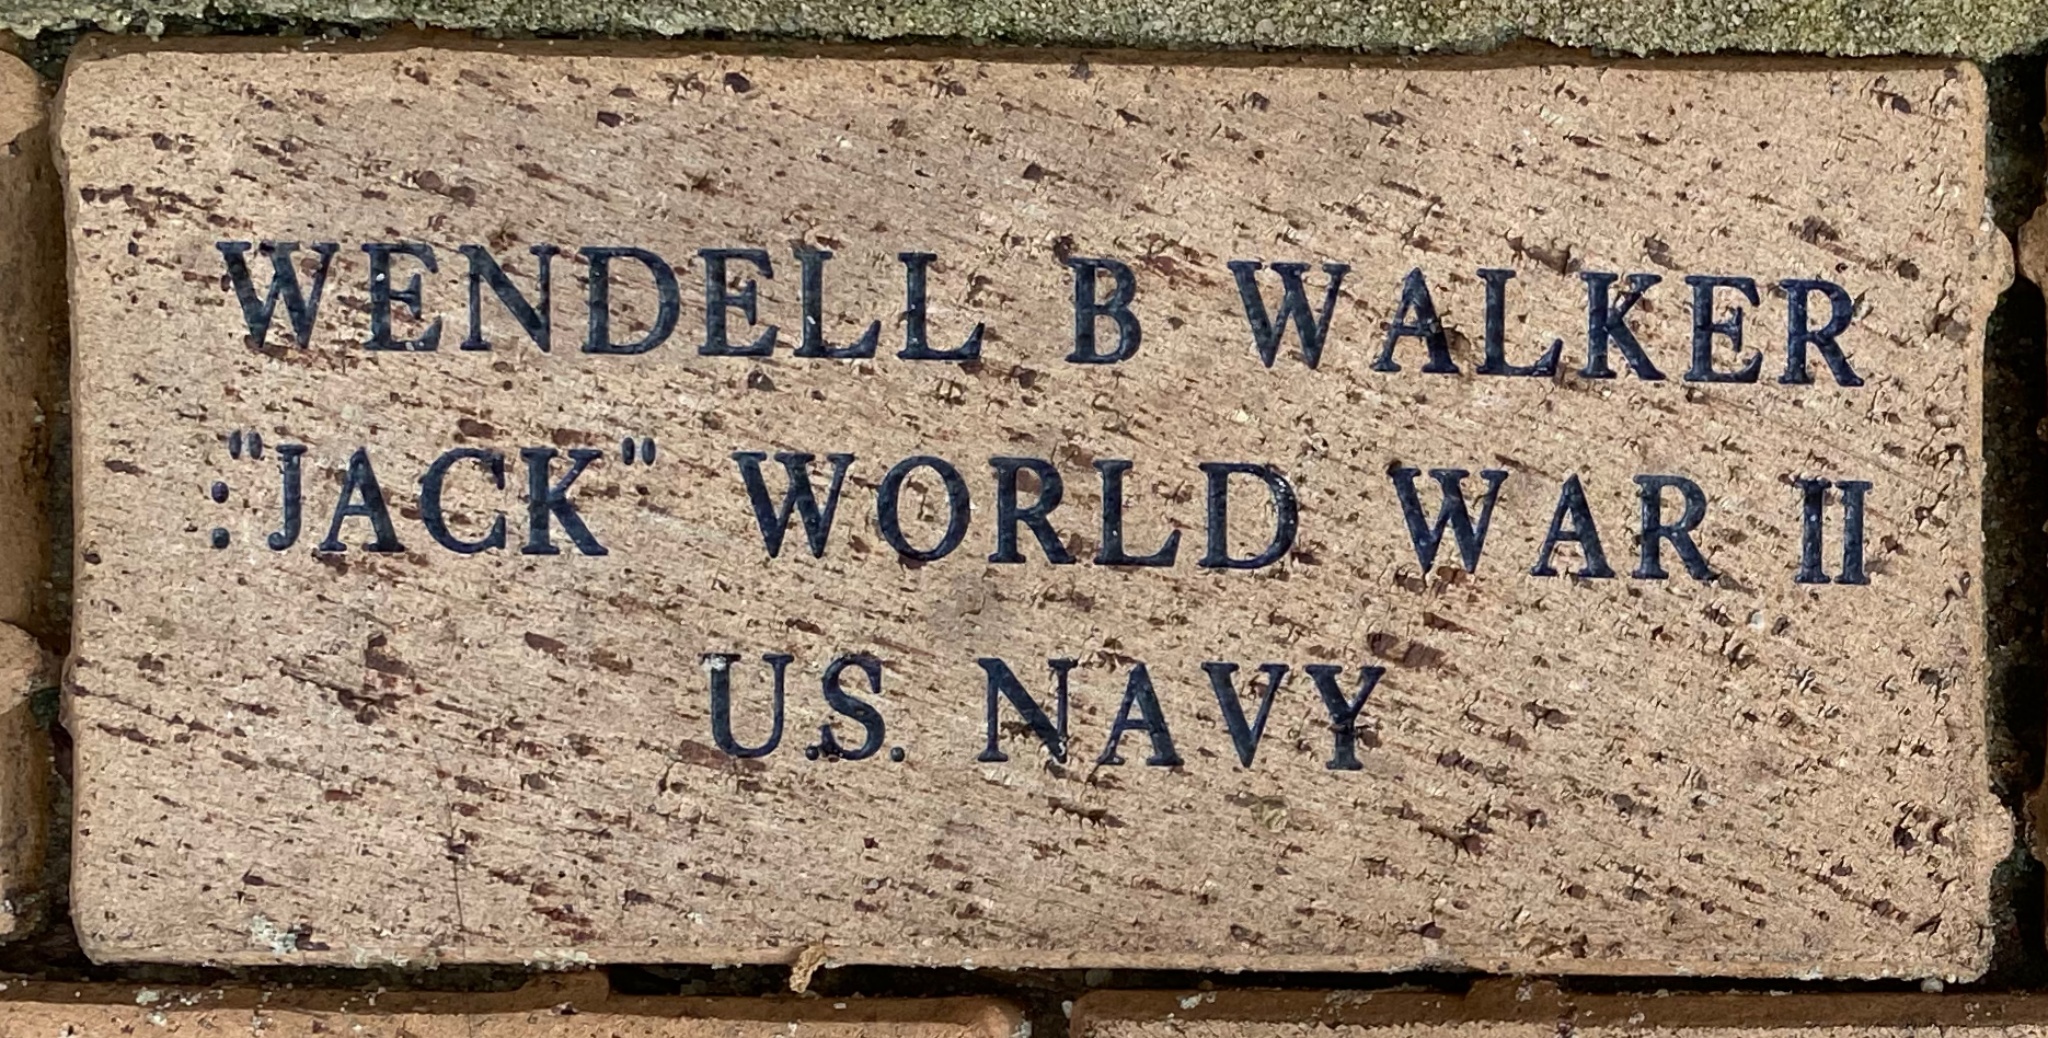 WENDELL B WALKER ”JACK” WORLD WAR II U.S. NAVY